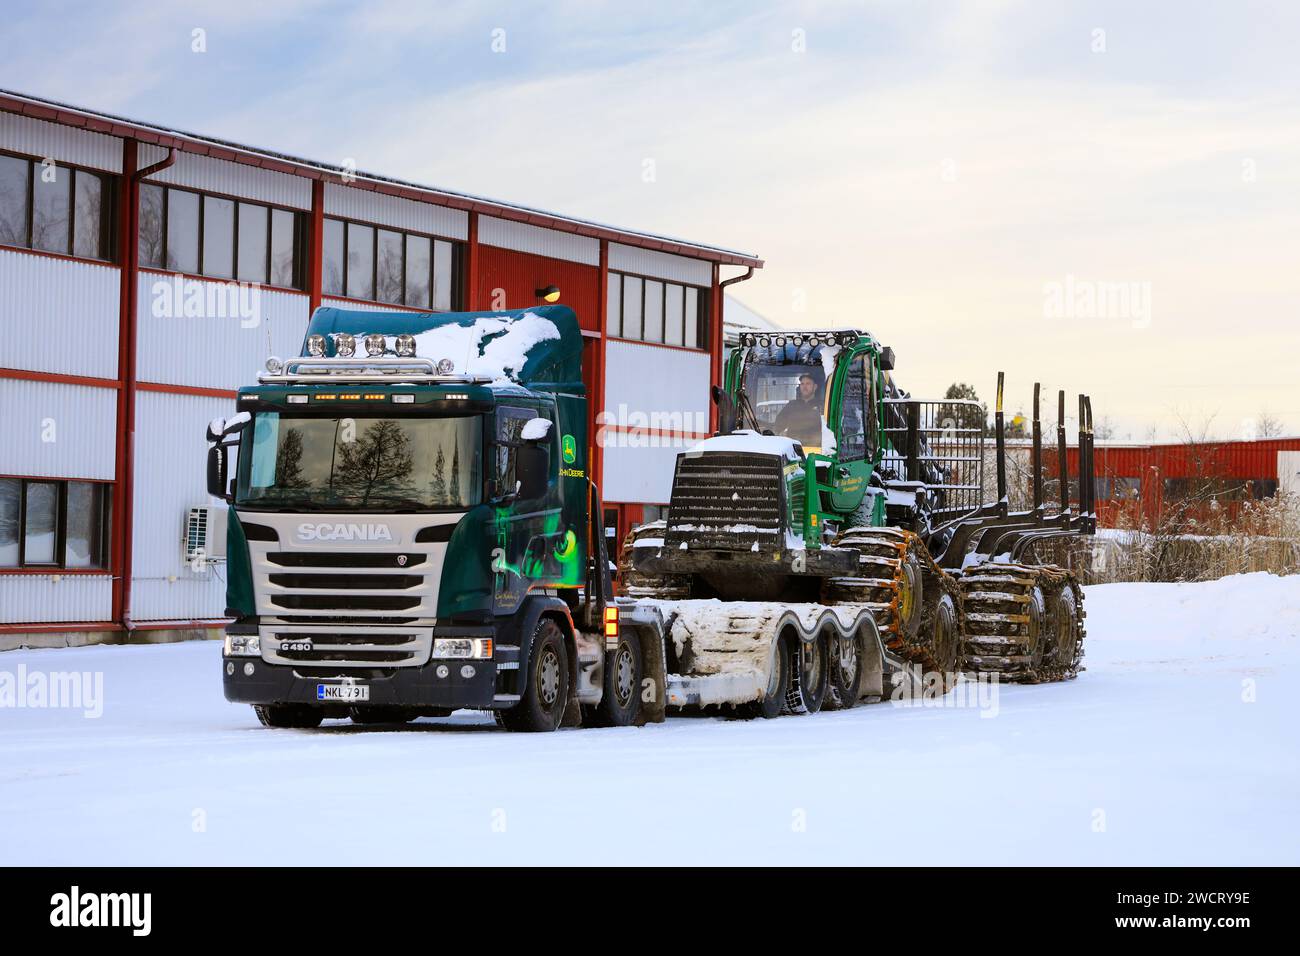 Caricamento dello spedizioniere forestale John Deere 1210E sul rimorchio del dumper Scania G490 per il trasporto in un giorno d'inverno. Salo, Finlandia. 27 dicembre 2023. Foto Stock